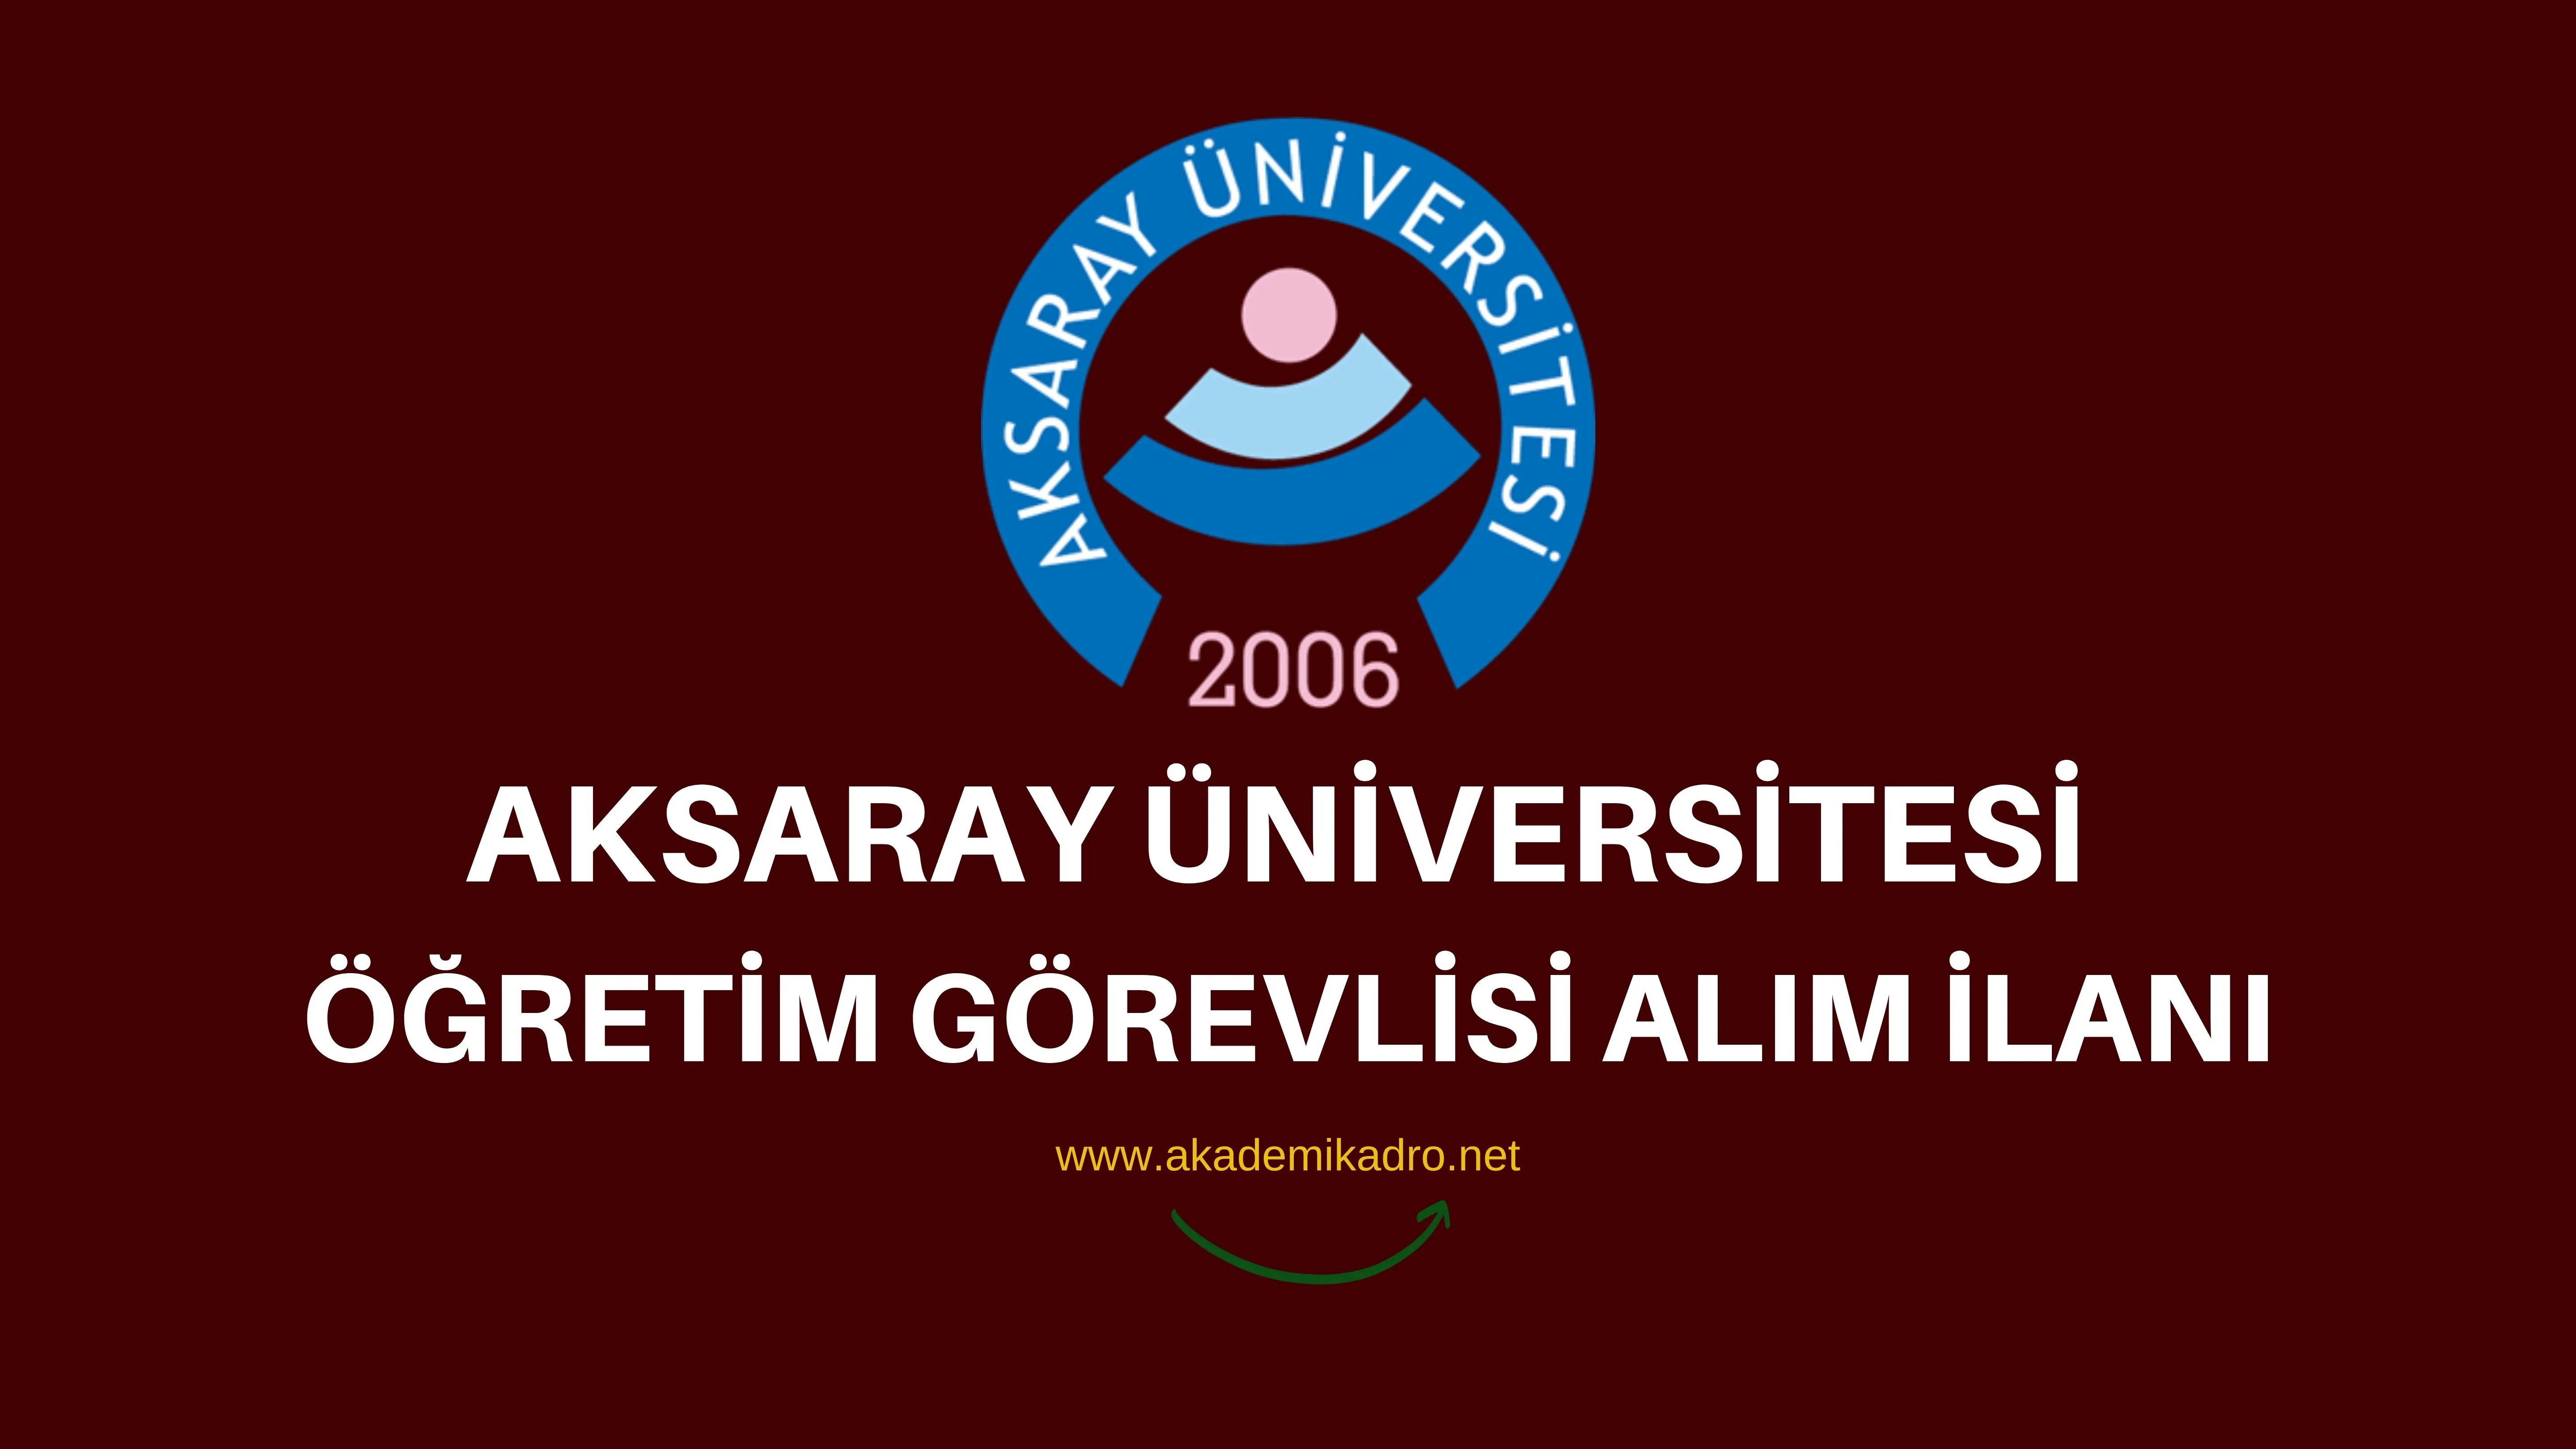 Aksaray Üniversitesi 4 Öğretim Görevlisi alacaktır. Son başvuru tarihi 28 Eylül 2022